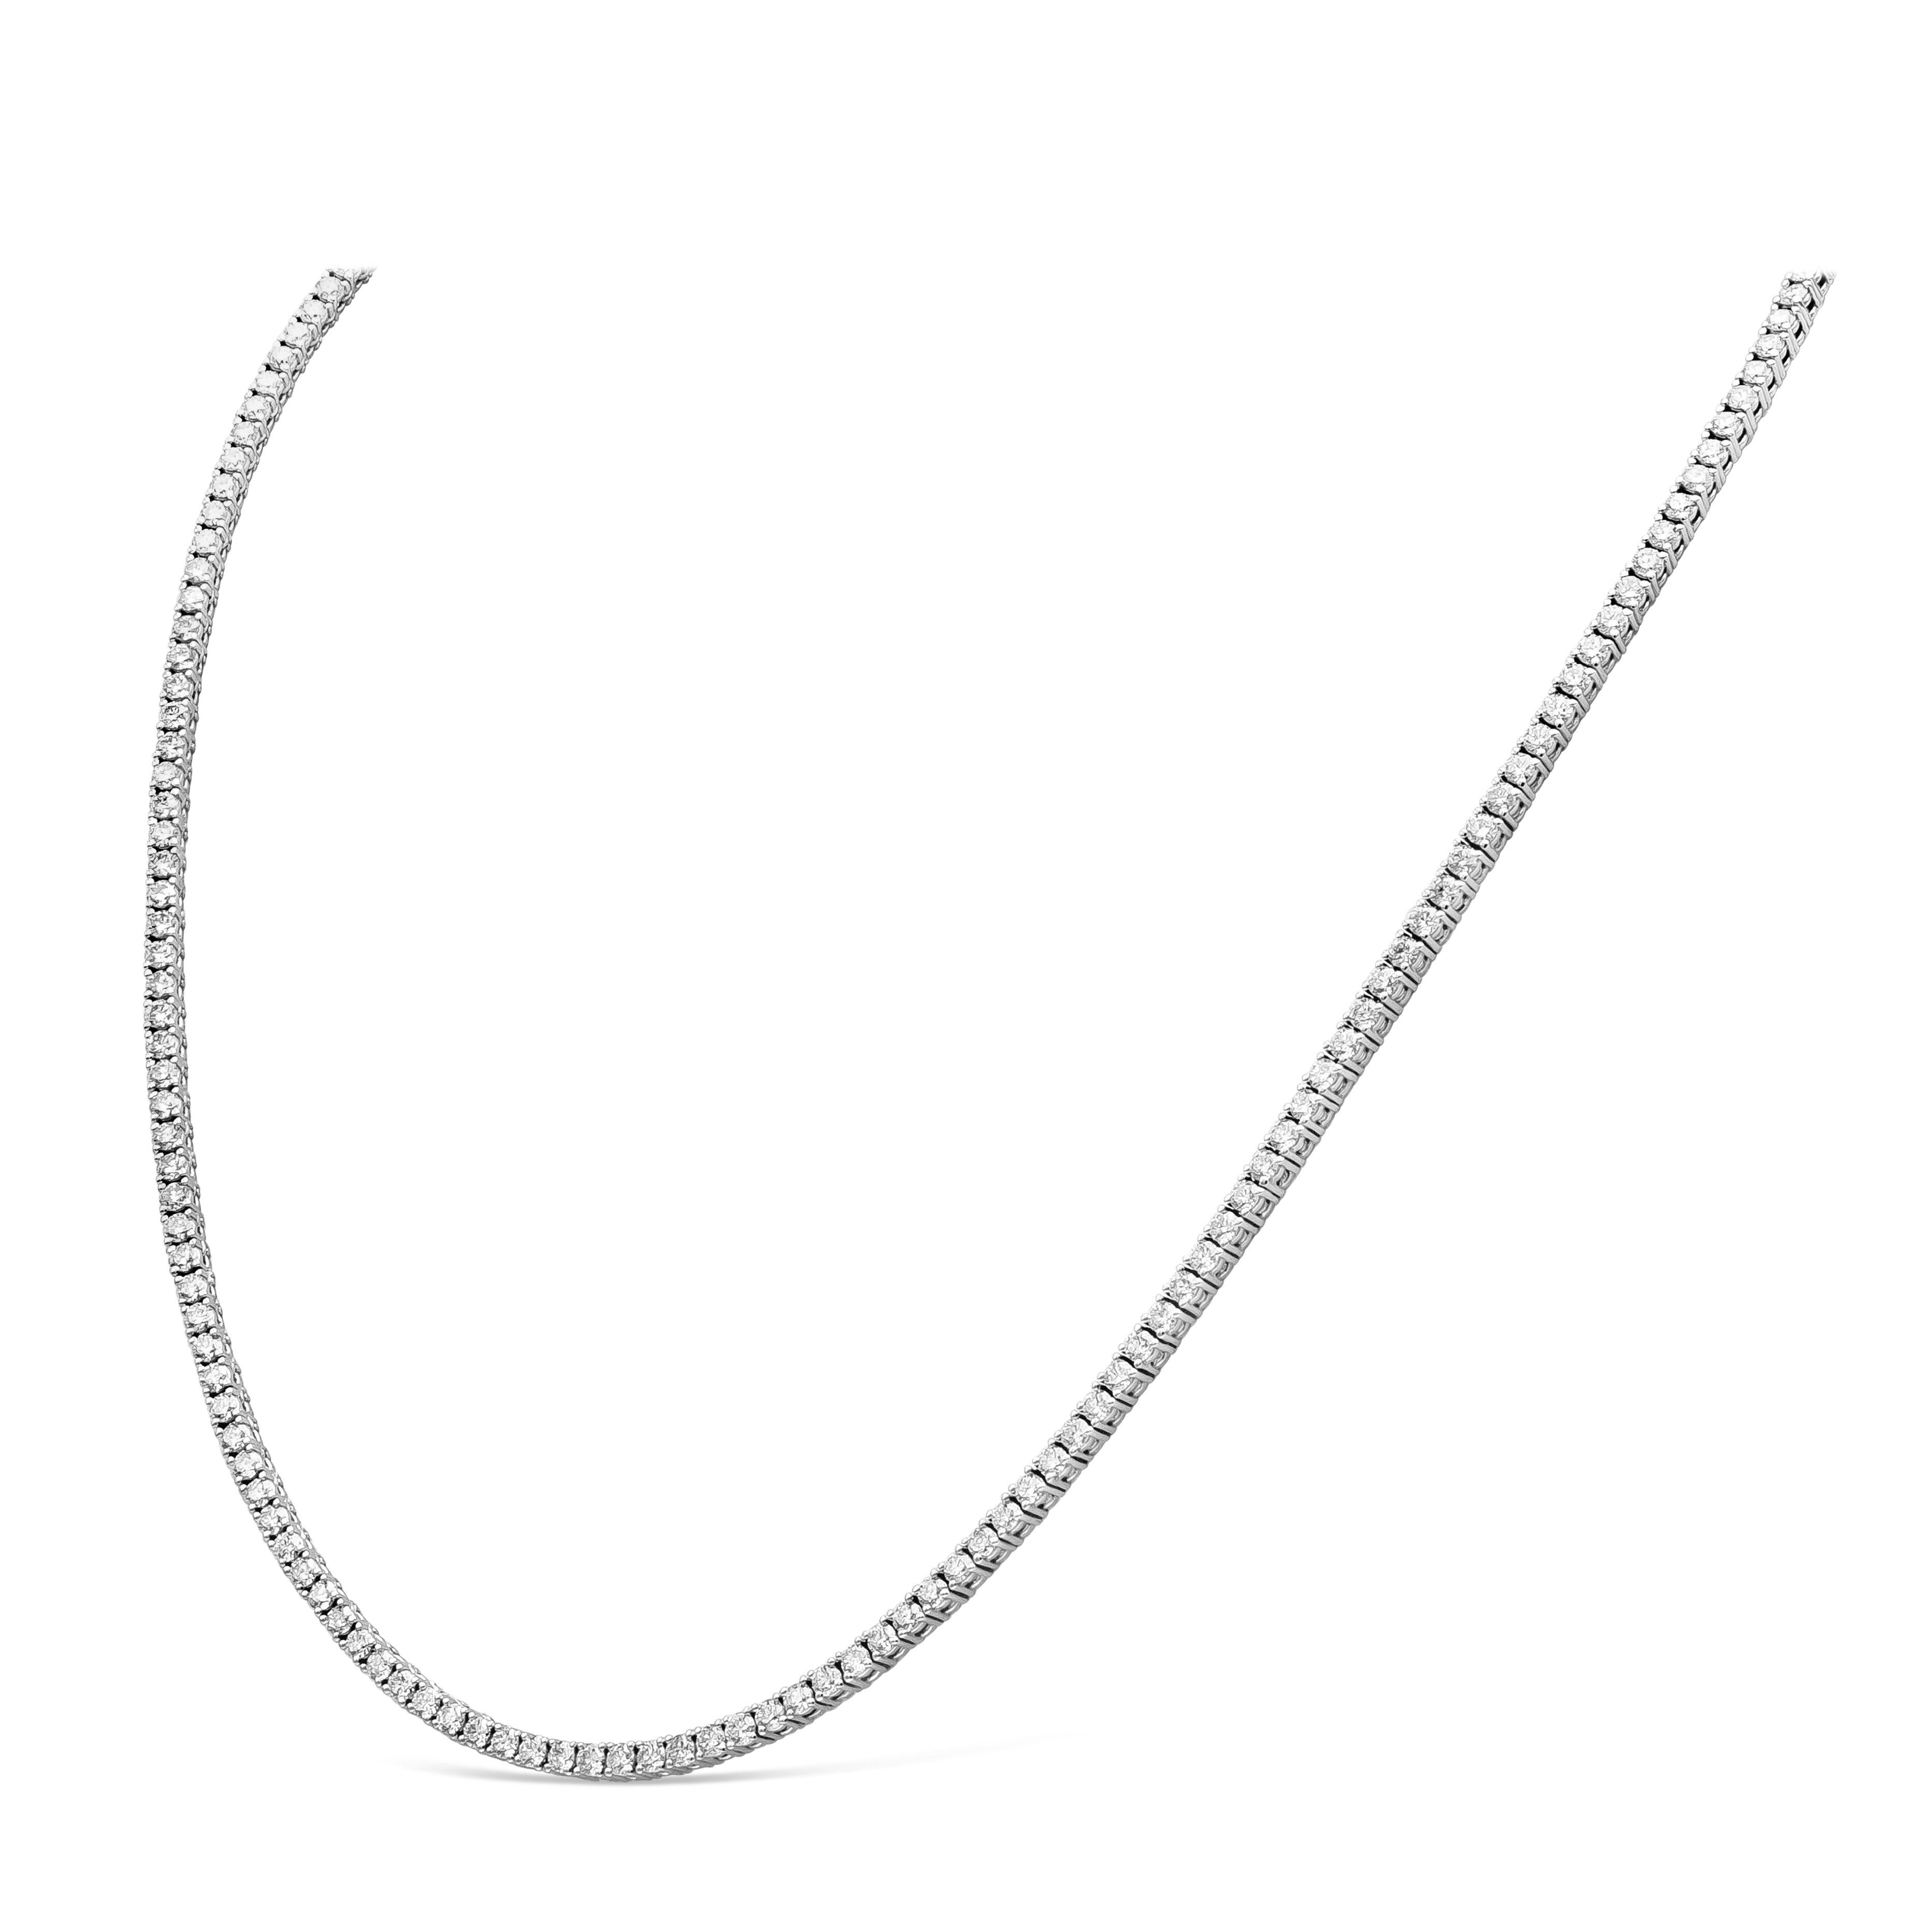 Un collier de tennis classique mettant en valeur 192 diamants ronds et brillants, sertis dans une monture en or blanc 18k poli. Les diamants pèsent 7,30 carats au total et sont de couleur F et de pureté VS-SI. Longueur de 18 pouces.

Roman Malakov